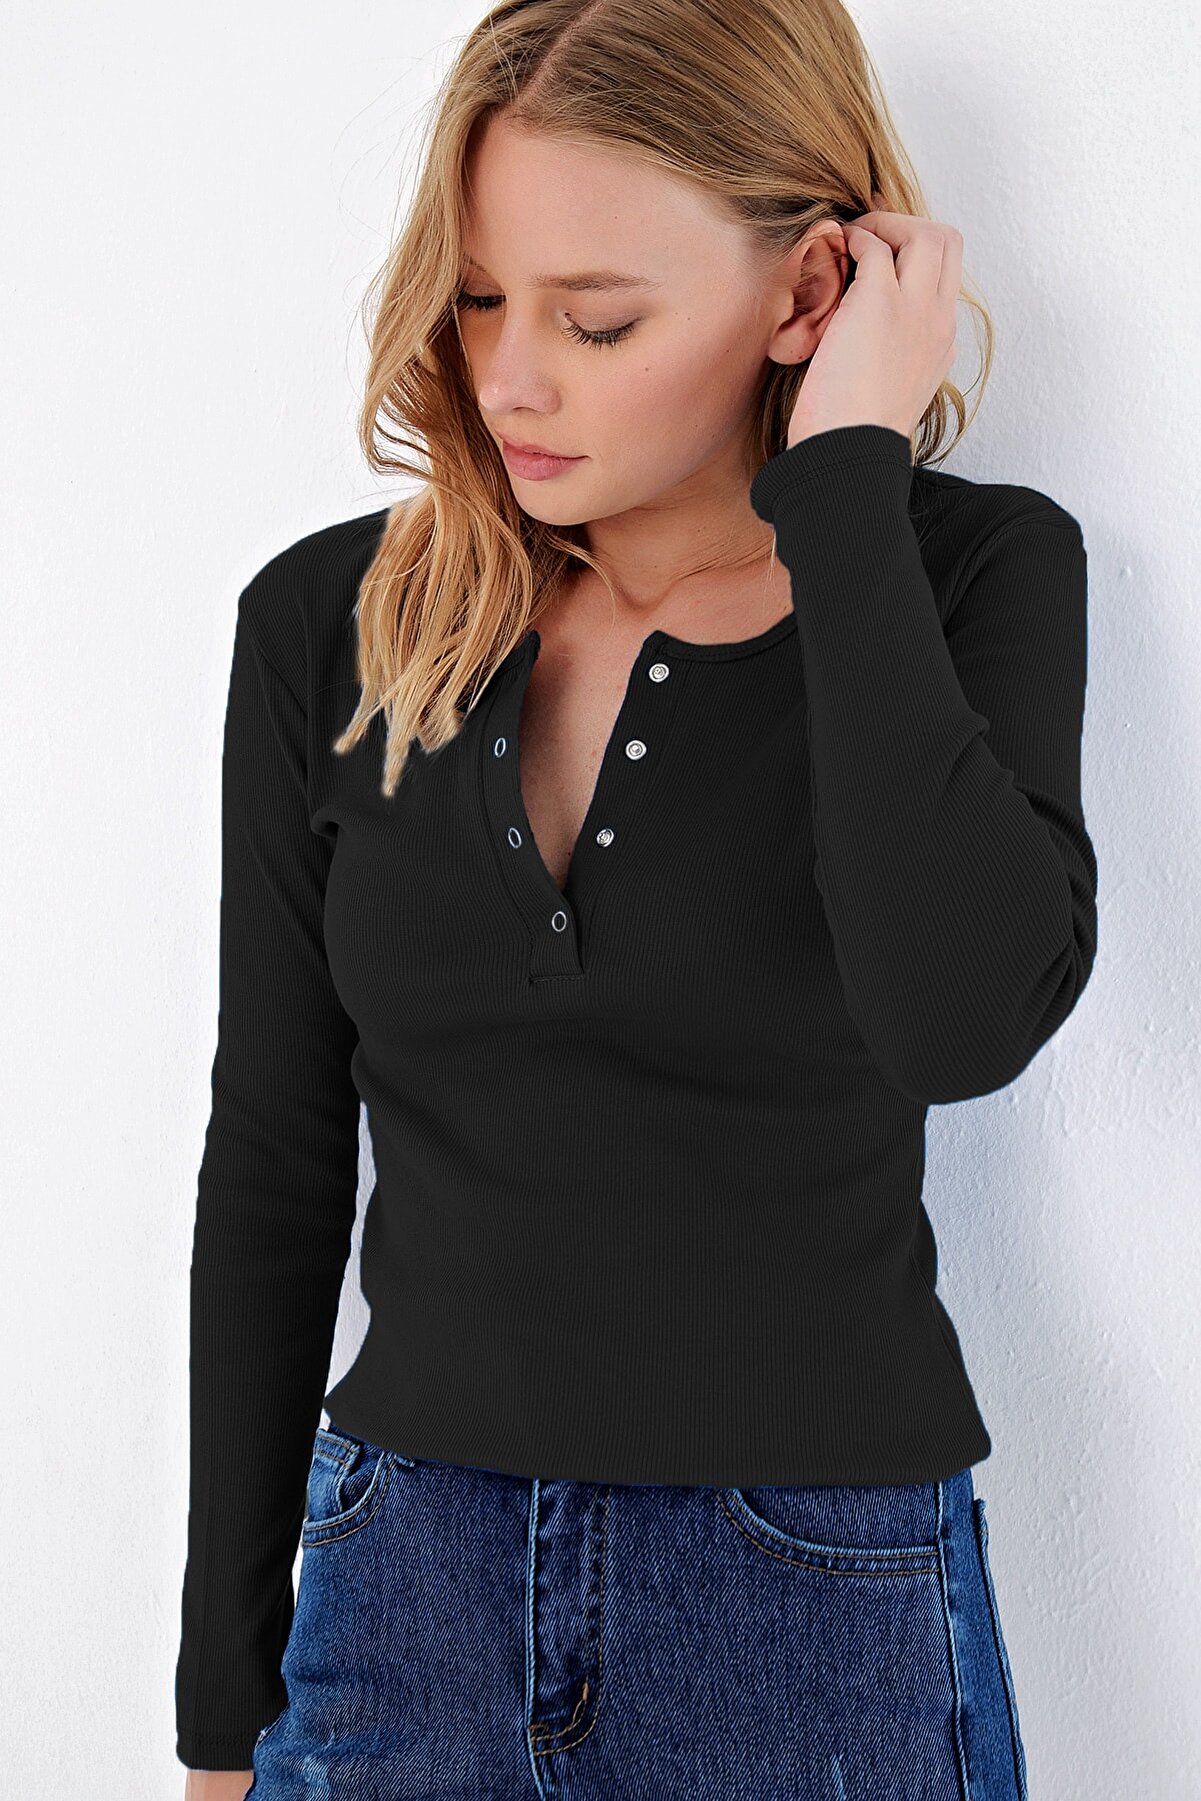 Trend Alaçatı Stili Kadın Siyah Çıtçıtlı Kaşkorse Bluz MDS-345-BLZ